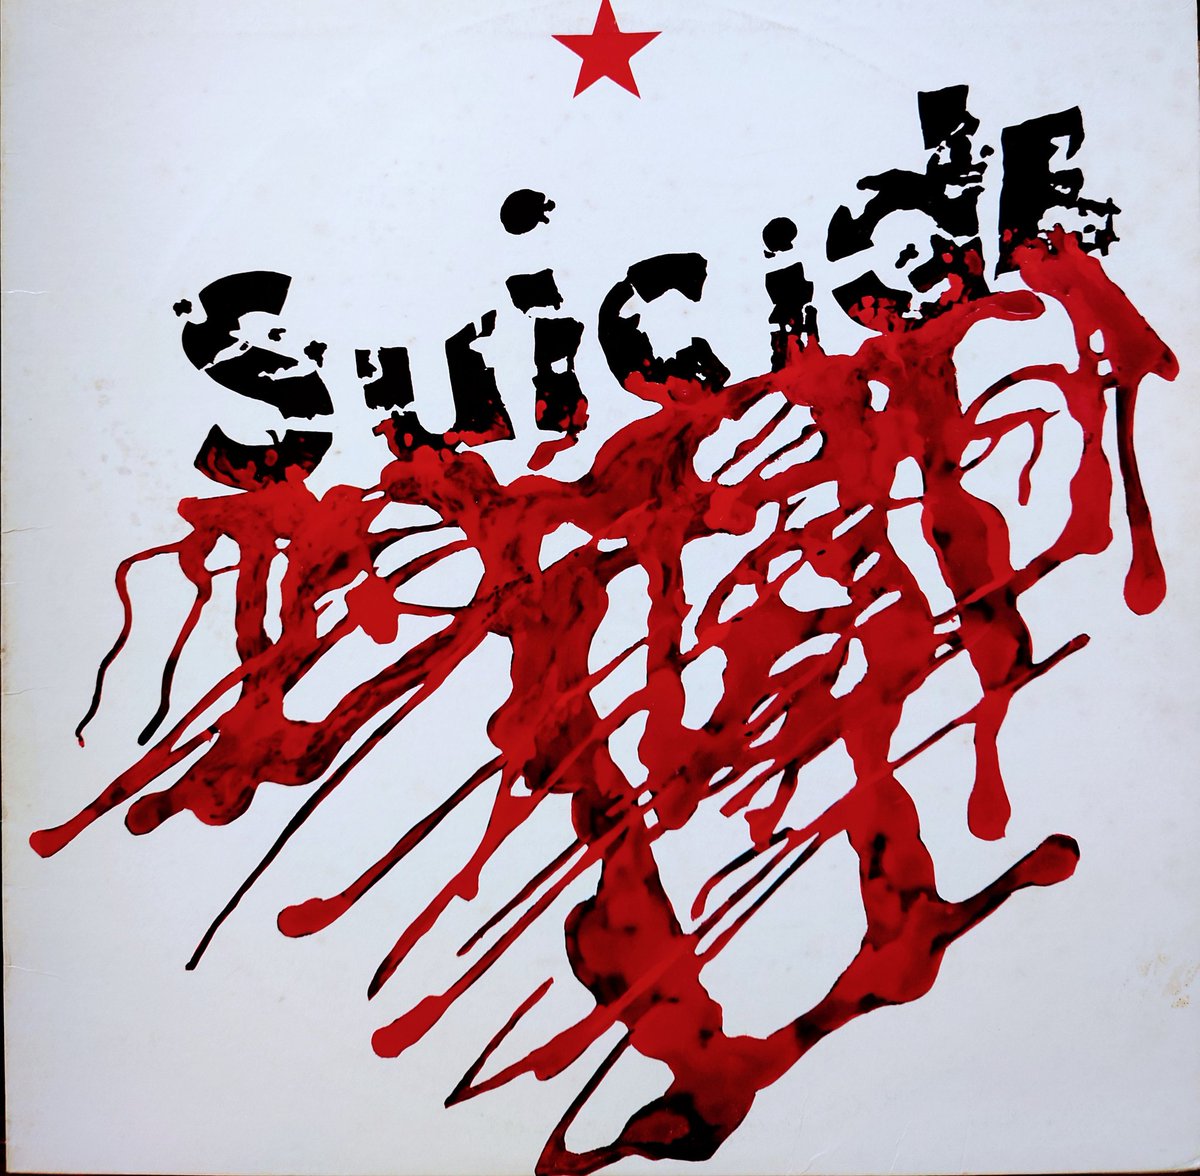 「Suicide - Suicide (77)米オリジナル盤。このアルバムは好きす」|黄昏tomatoのイラスト